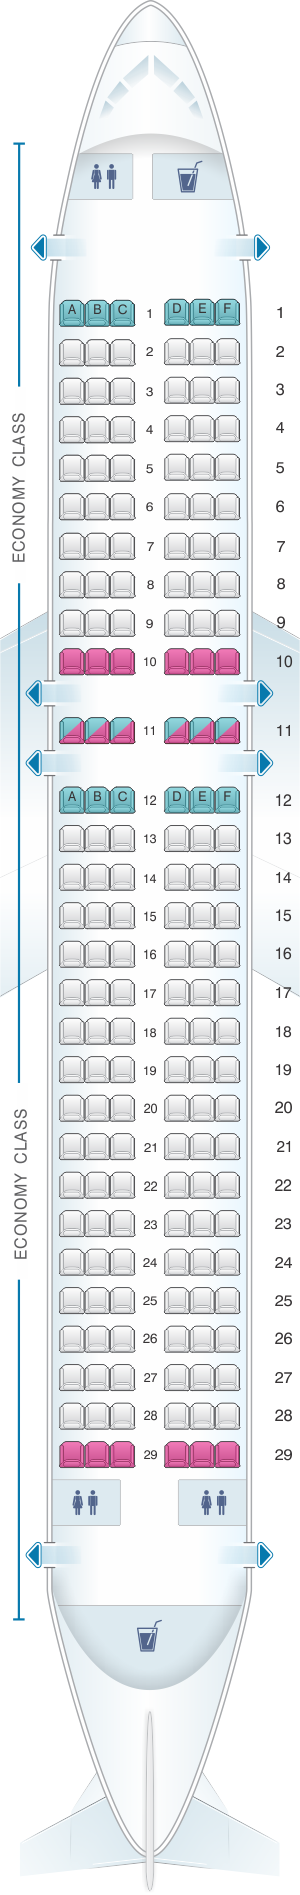 Seat map for Virgin Atlantic Airbus A320 200